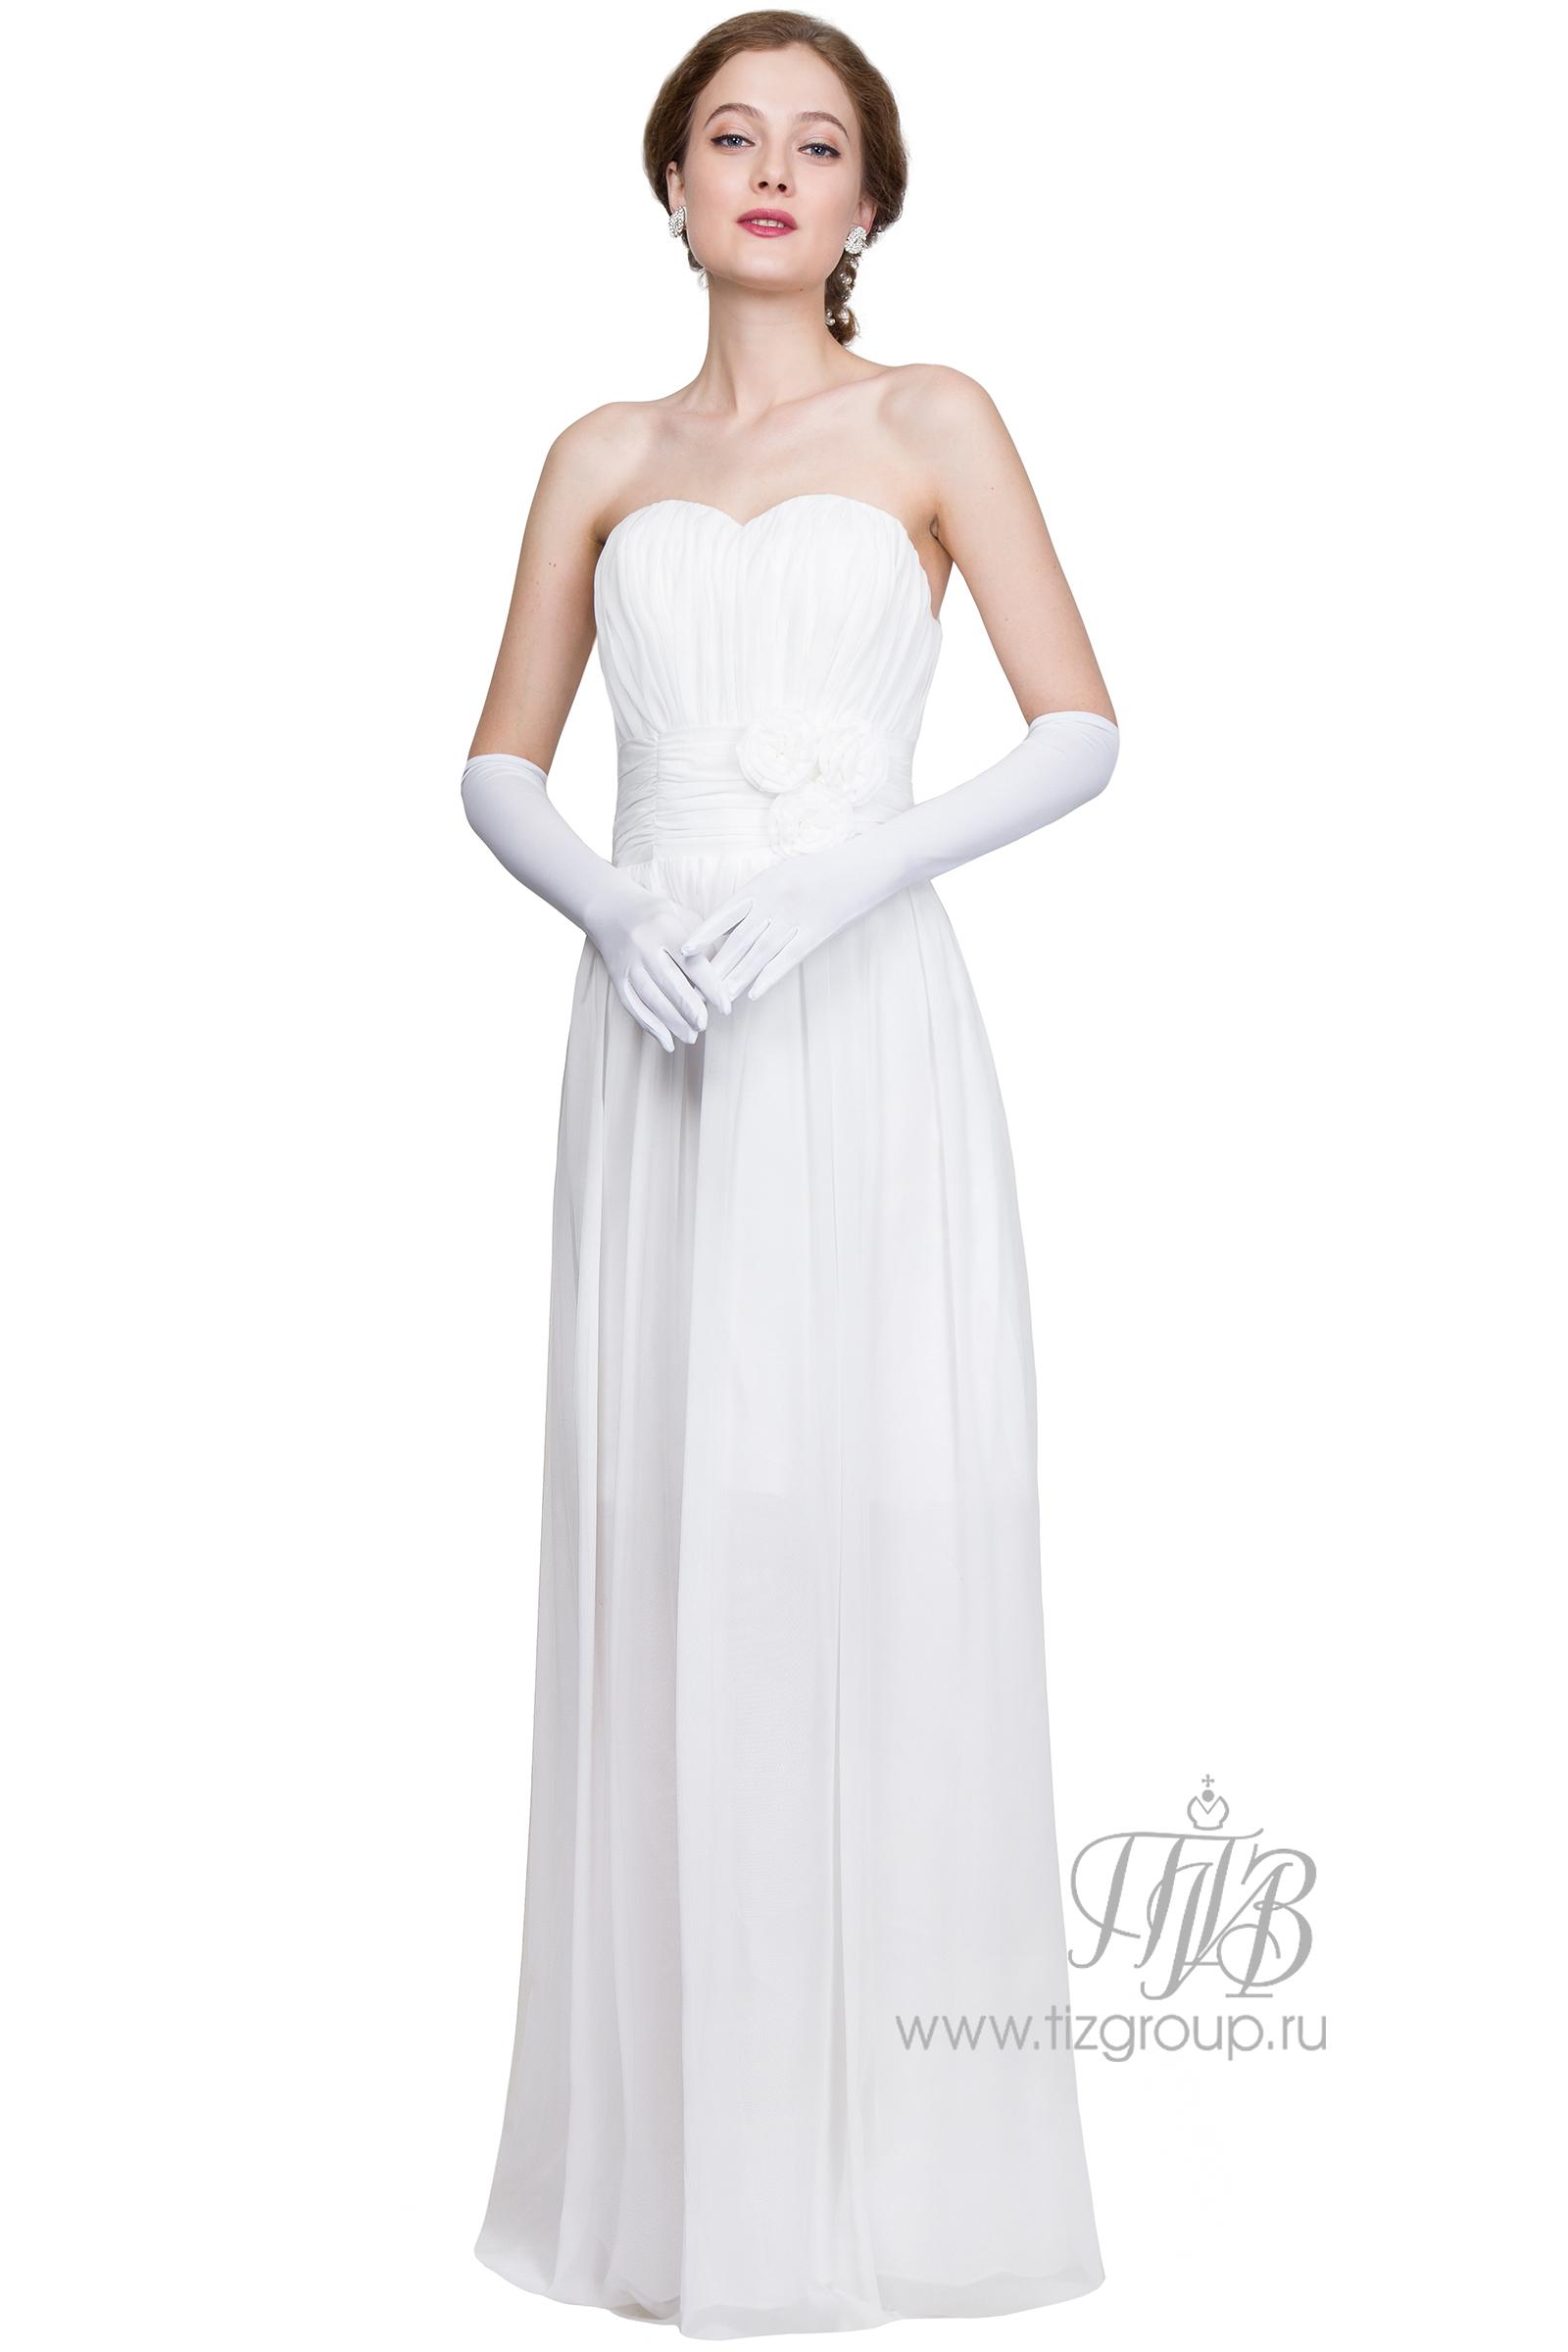 Балу каталог. Белое платье для бала.